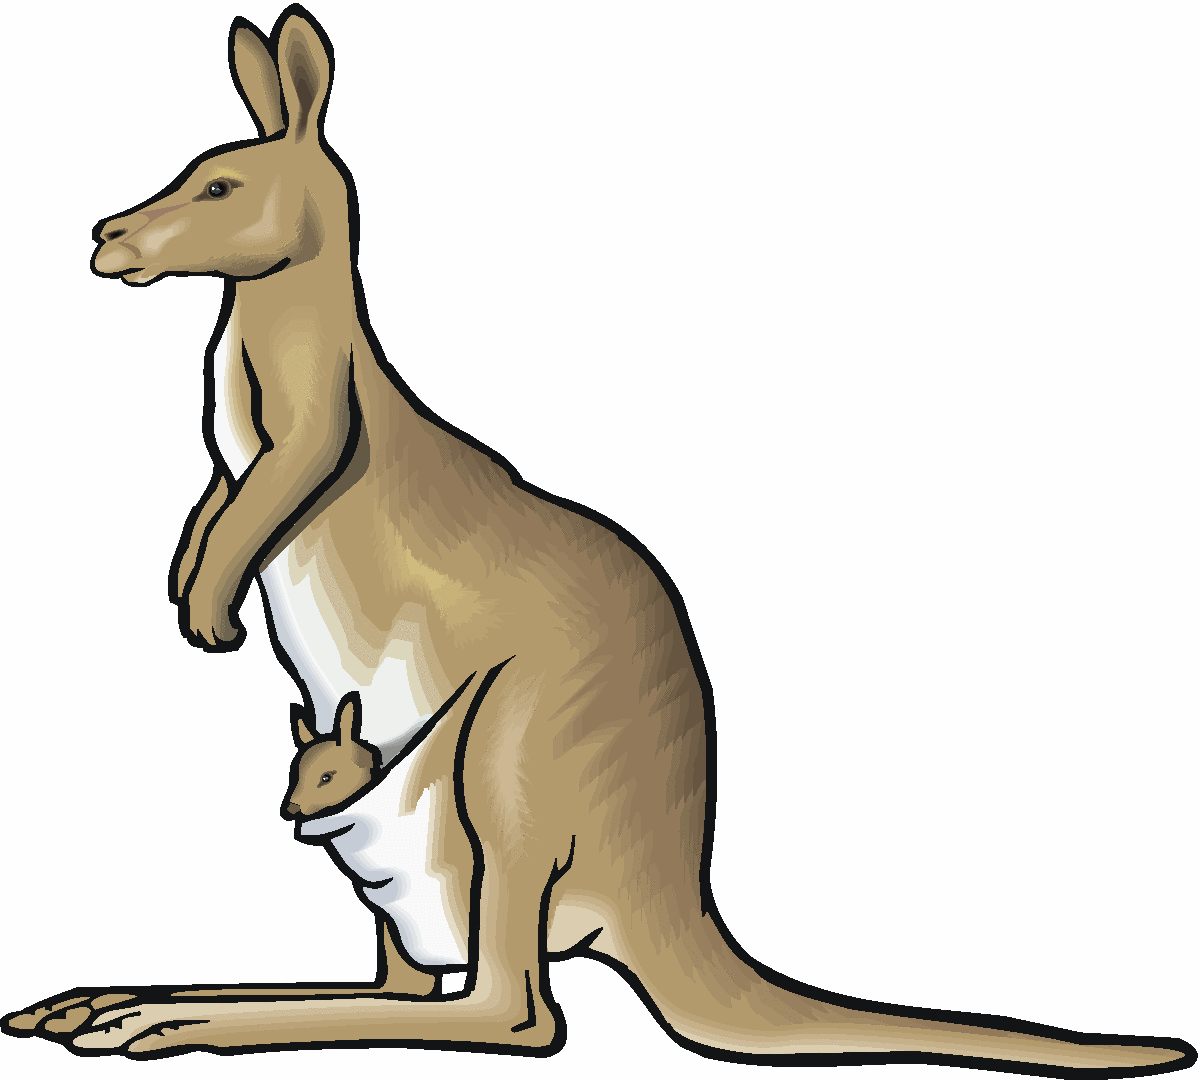 kangaroo care clipart - photo #41